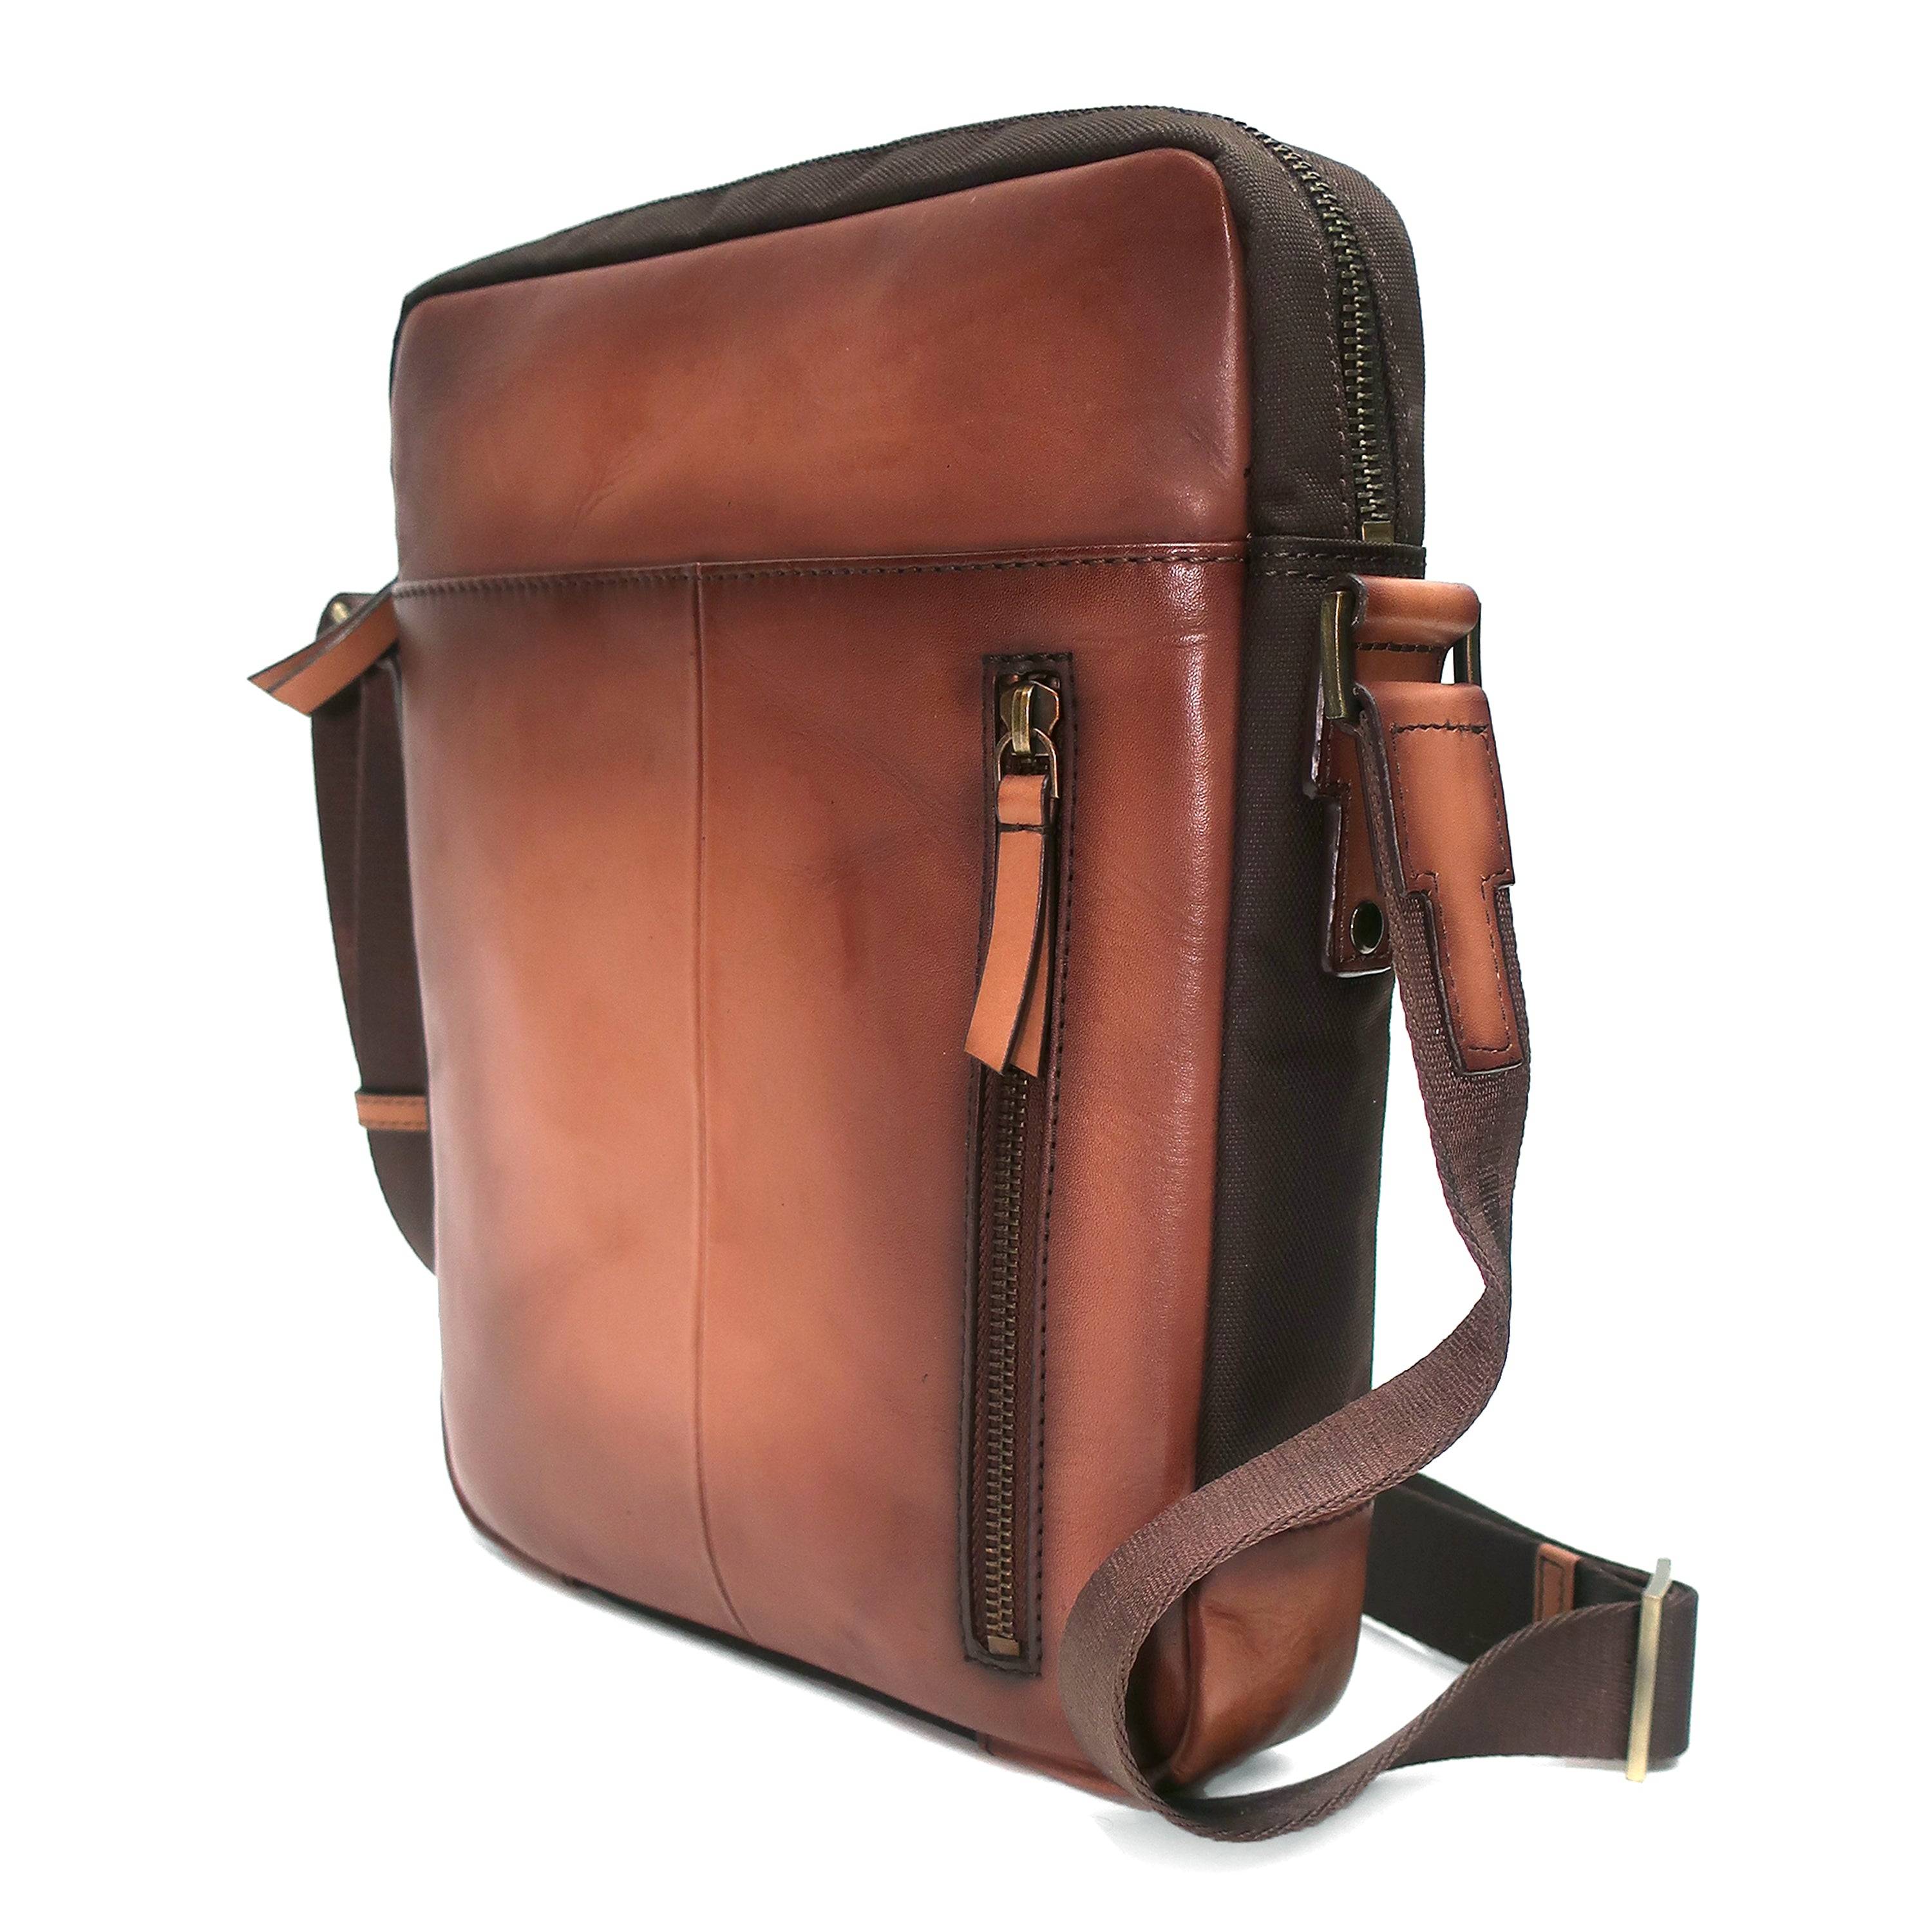 a brown leather messenger bag on a shoulder strap